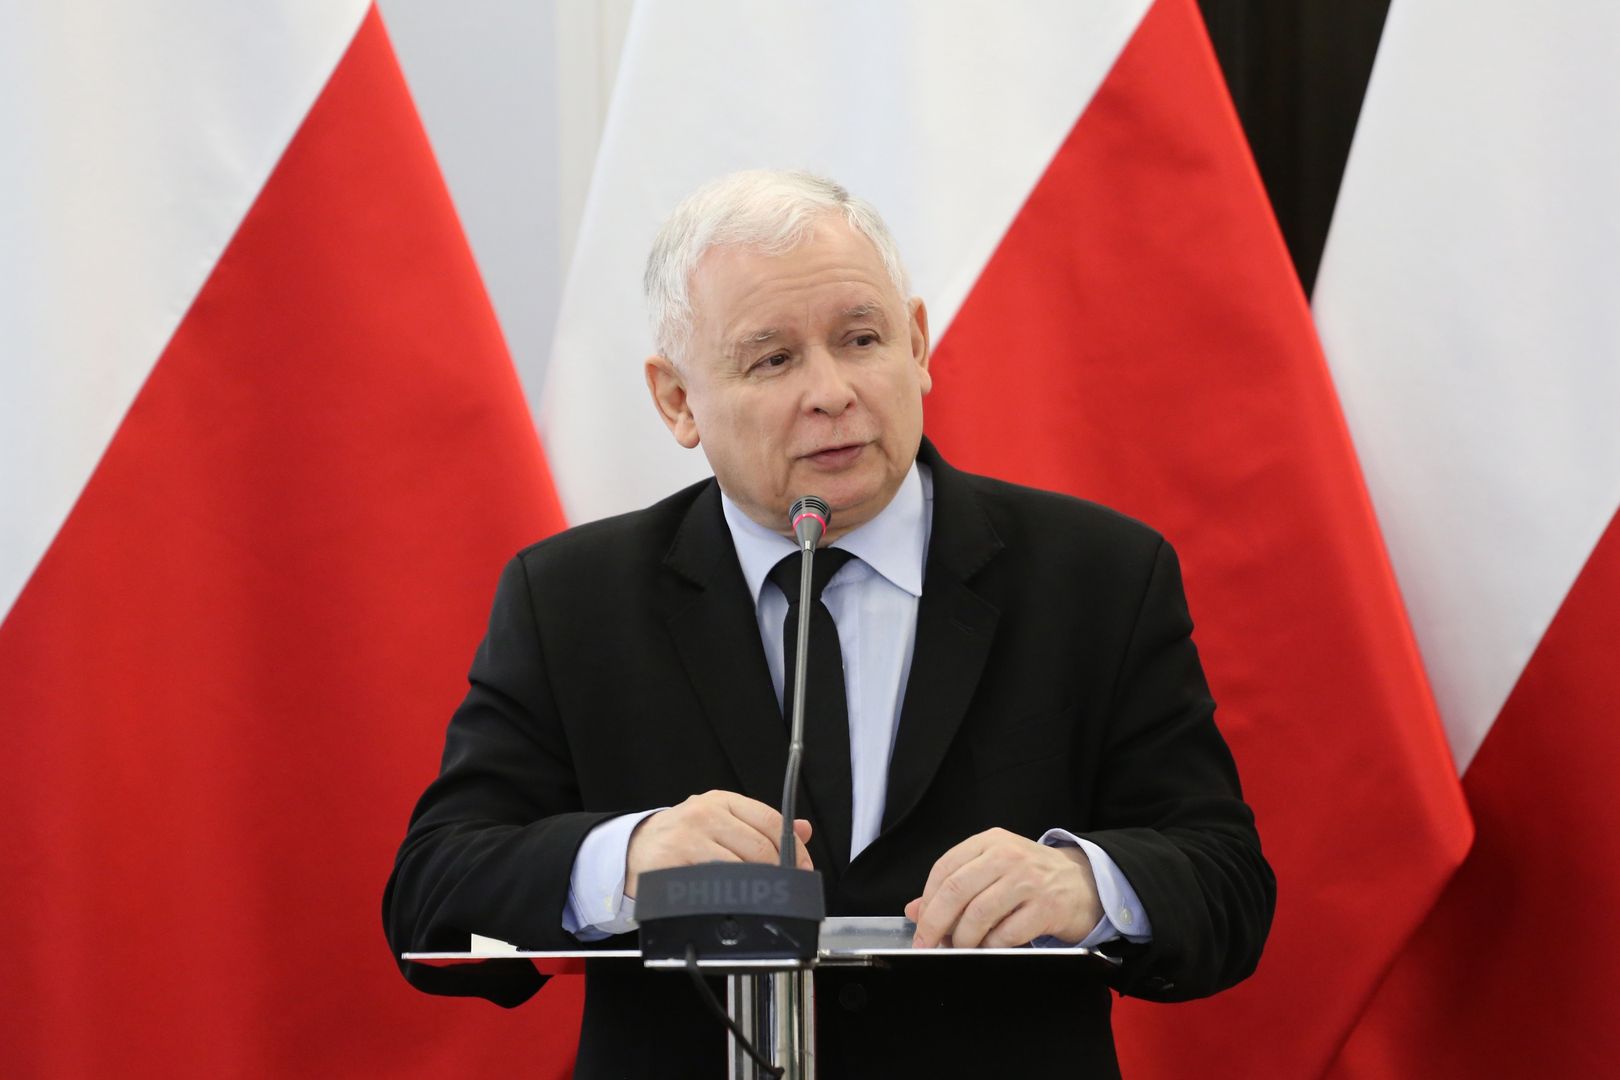 Znajomy Kaczyńskiego wyszedł przed szereg. Prezes PiS nie będzie zadowolony